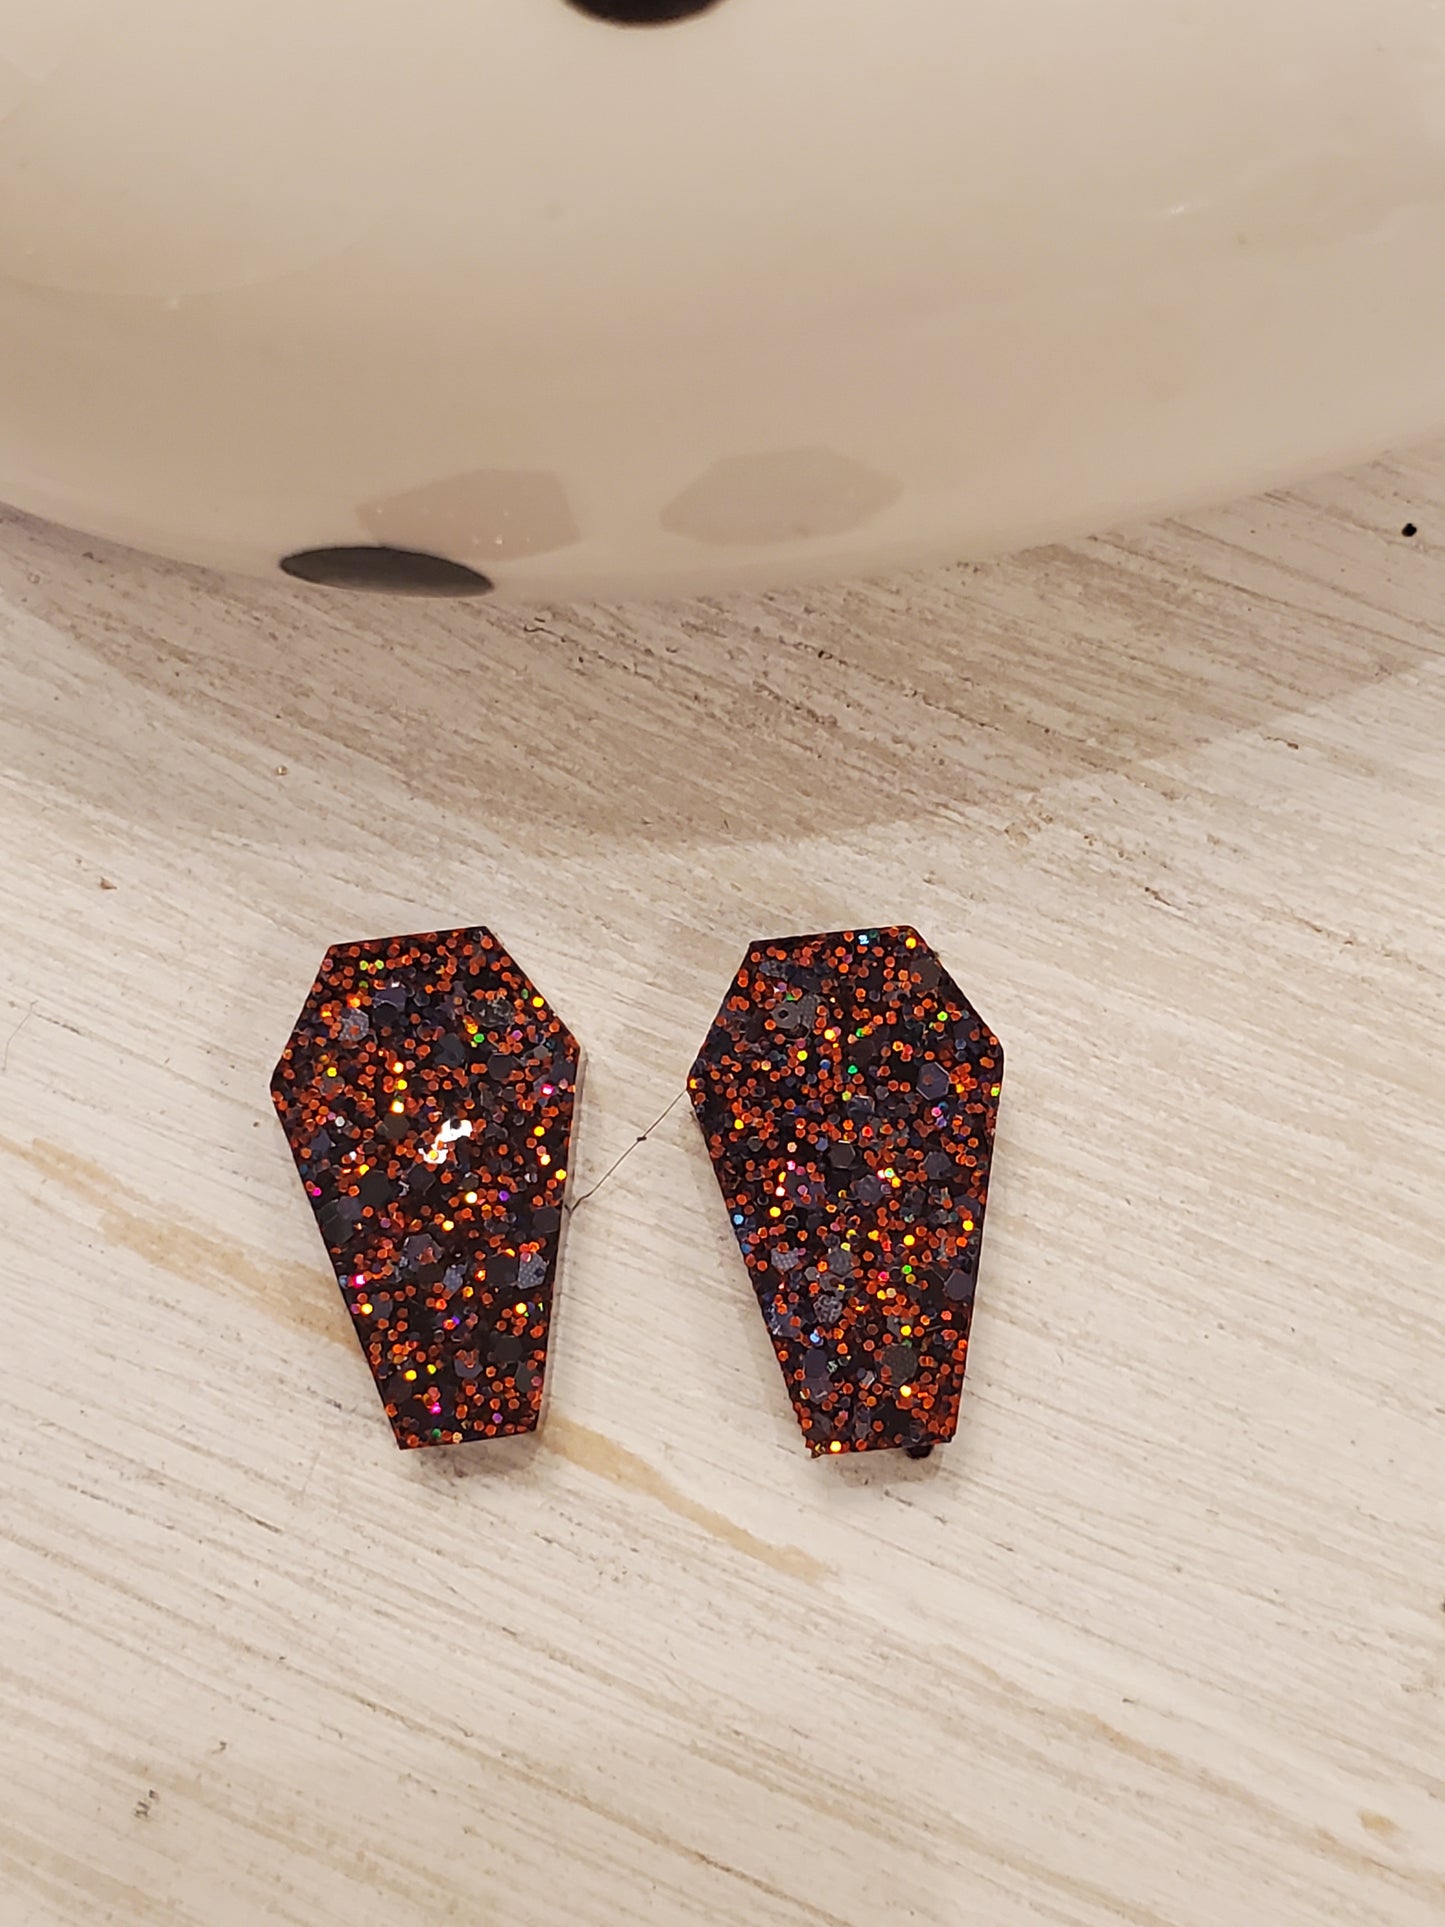 Handmade resin and glitter Coffin Orange earrings small studs